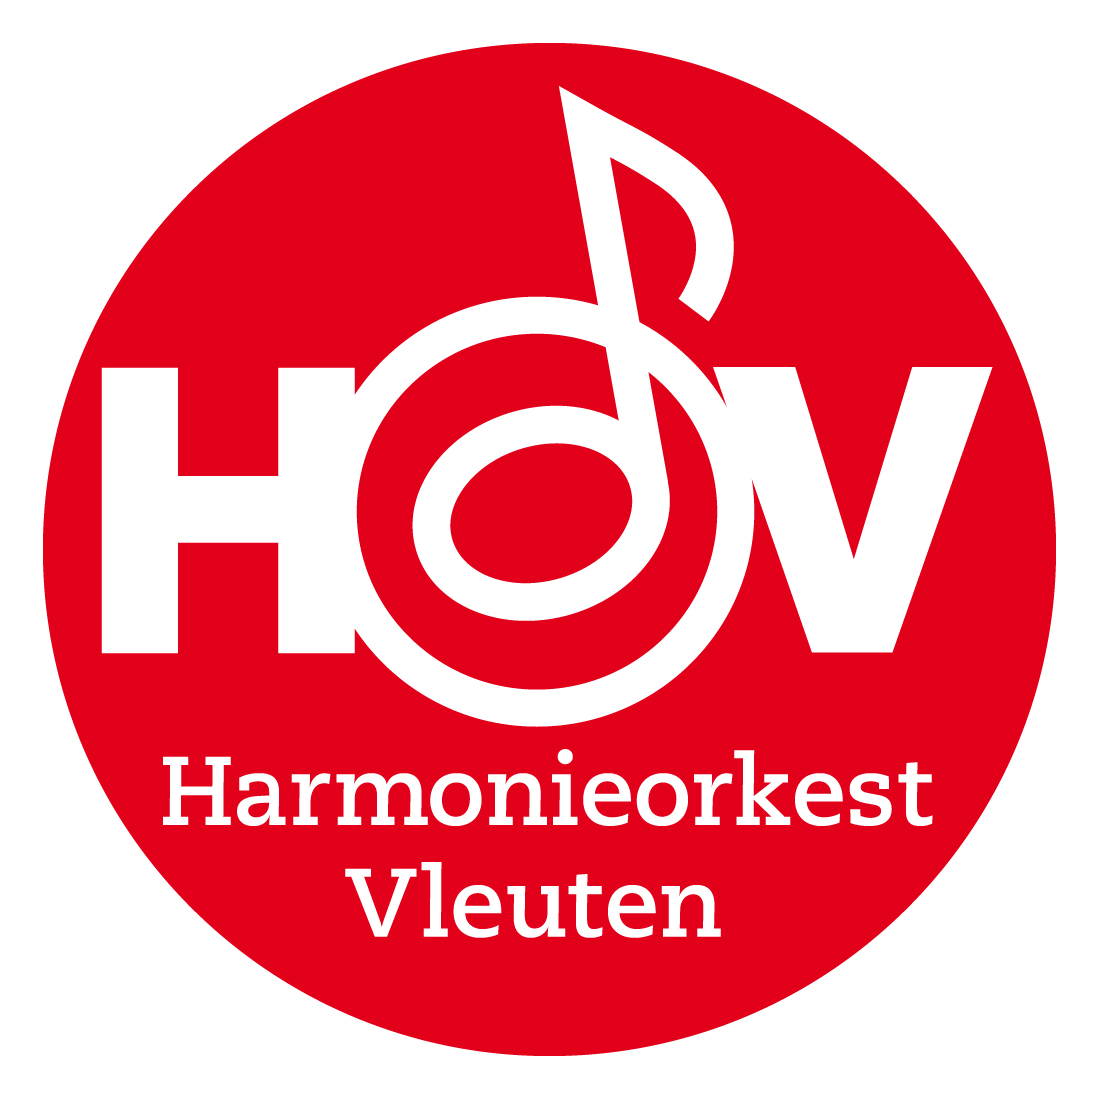 Harmonie orkest Vleuten